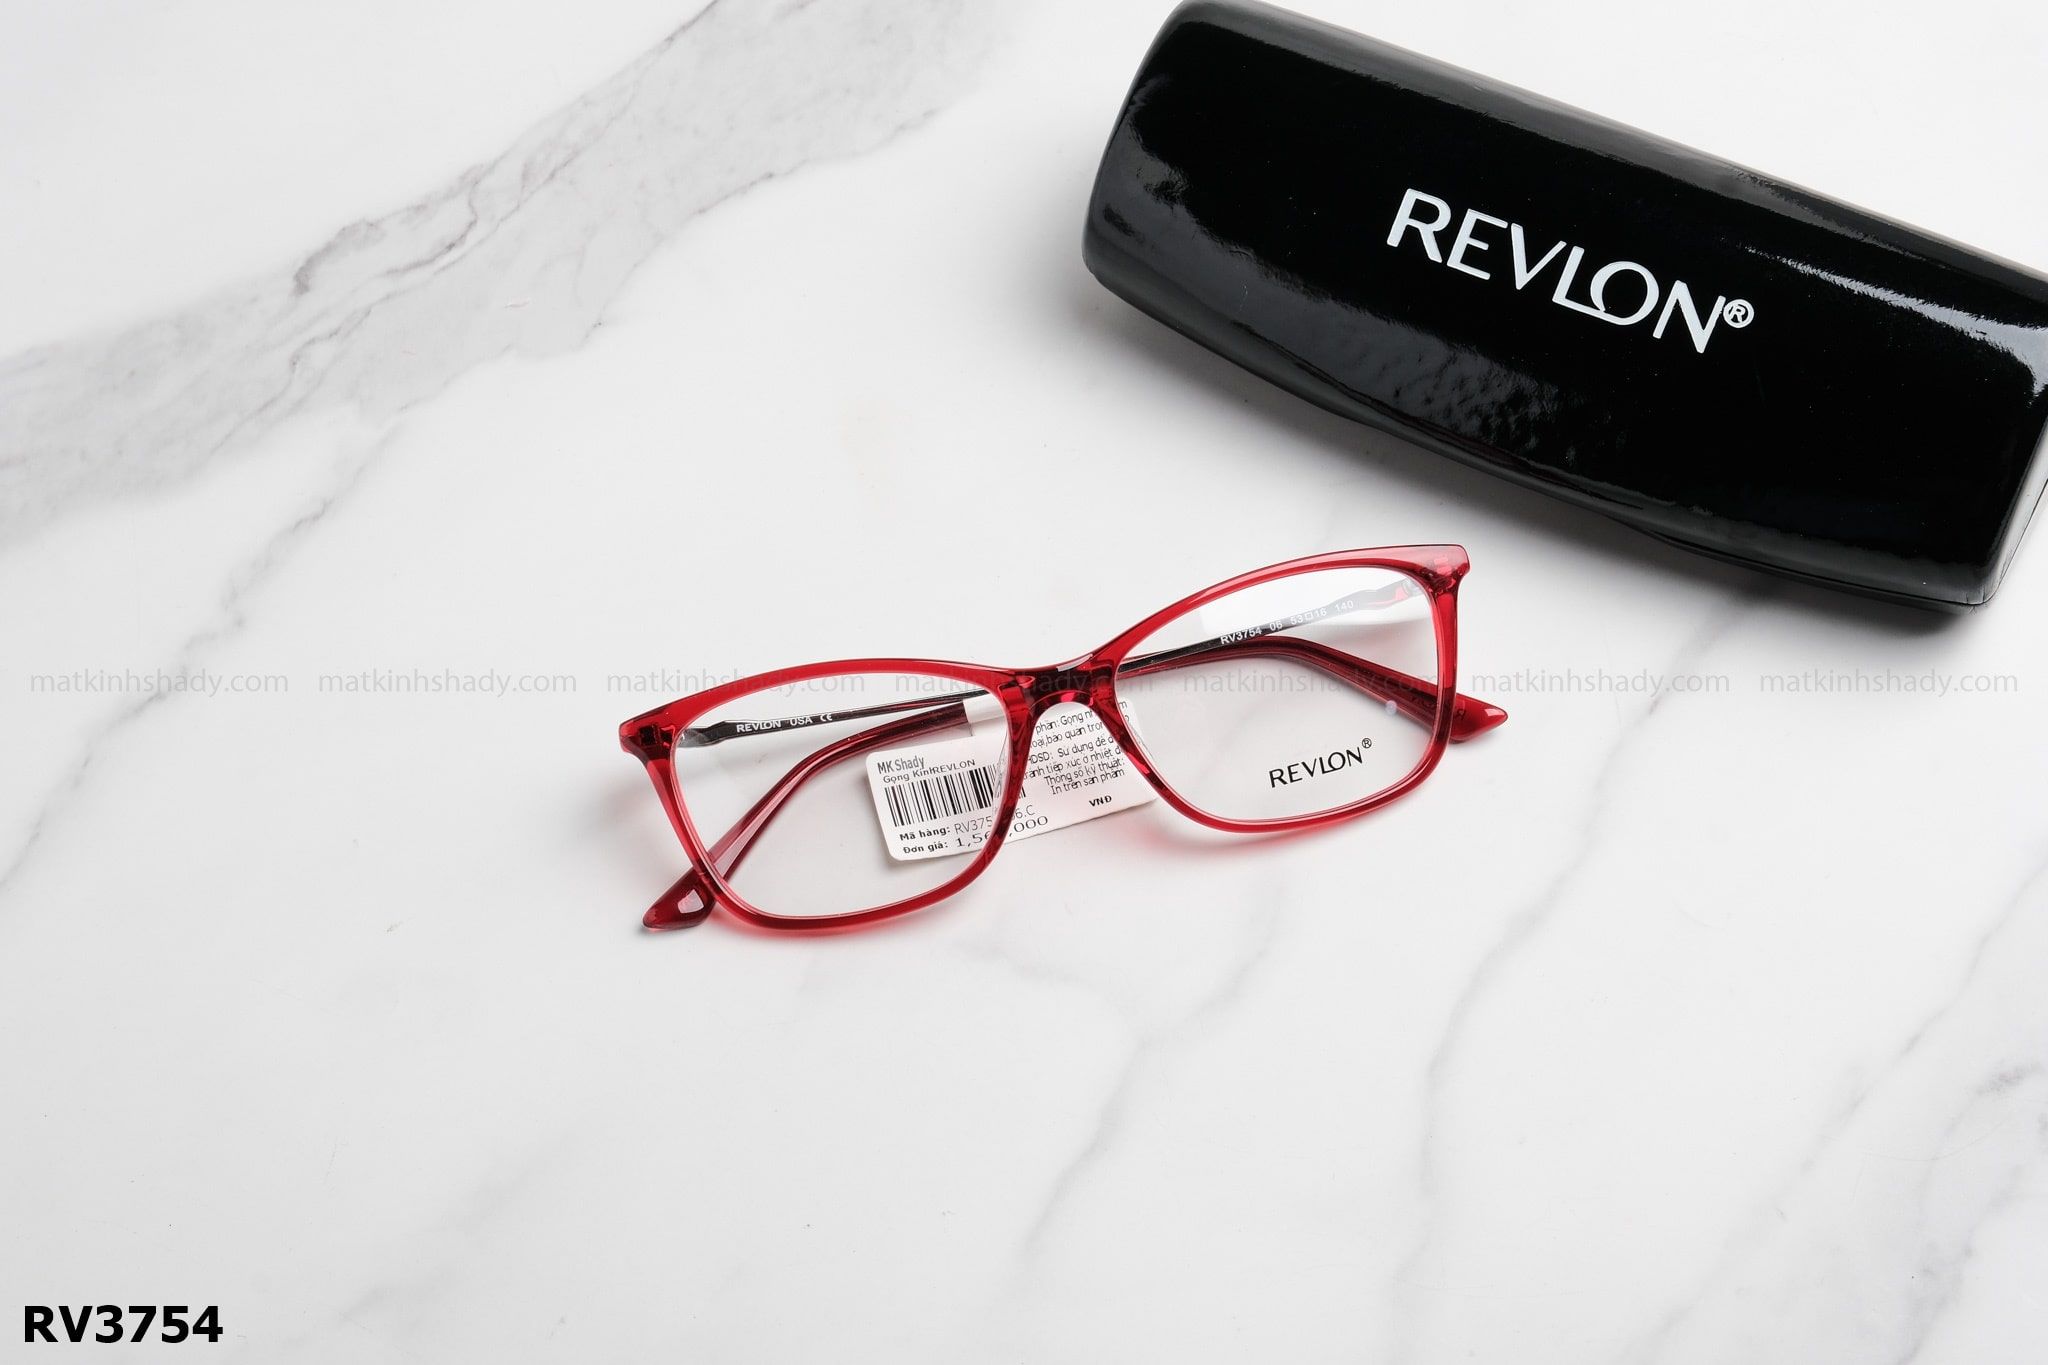  Revlon Eyewear - Glasses - RV3754 